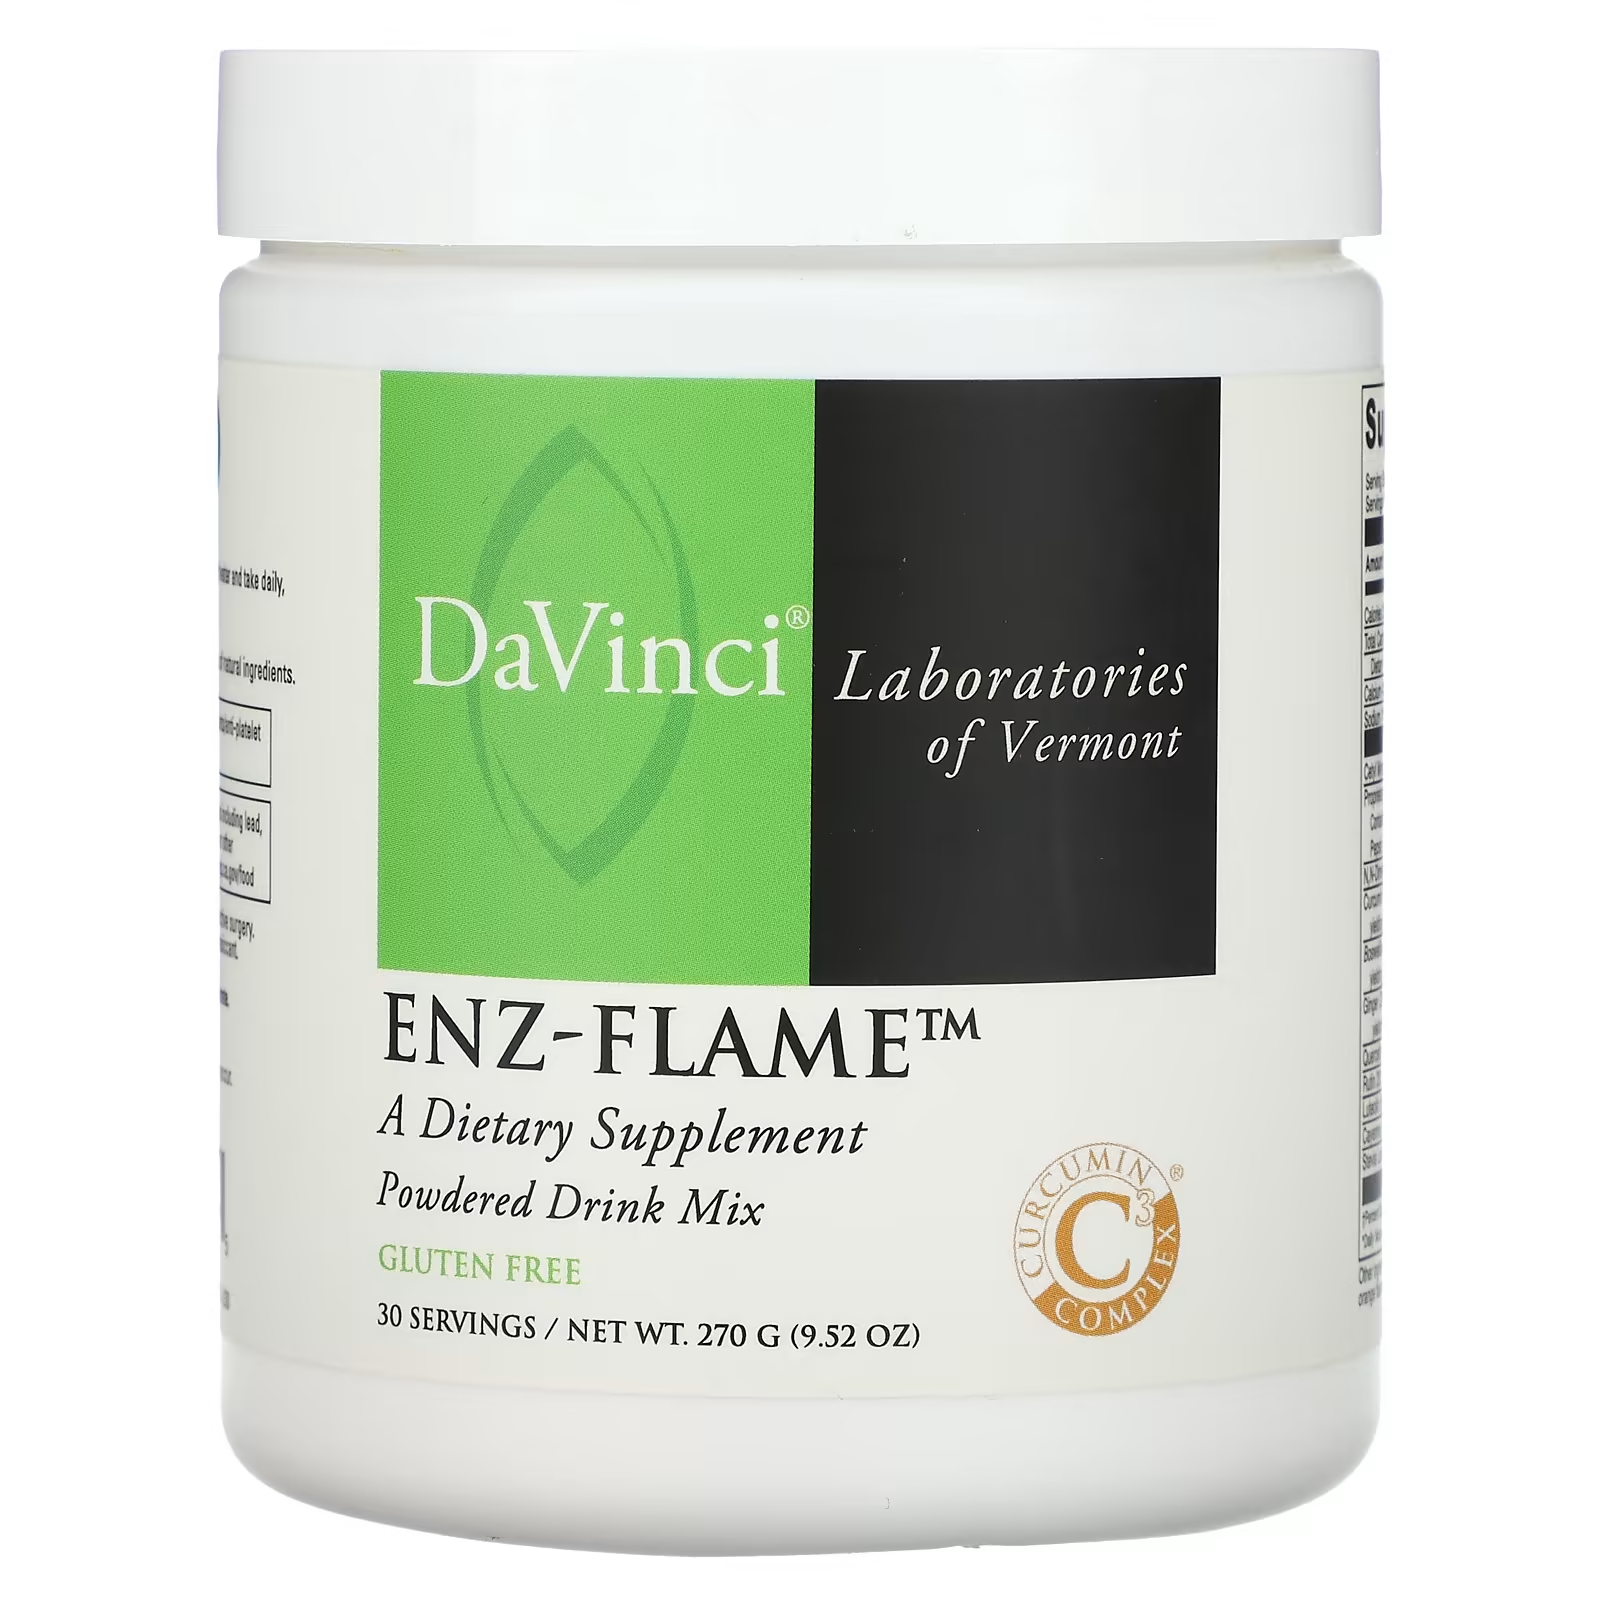 Порошковая смесь для напитков DaVinci Laboratories of Vermont Enz-Flame